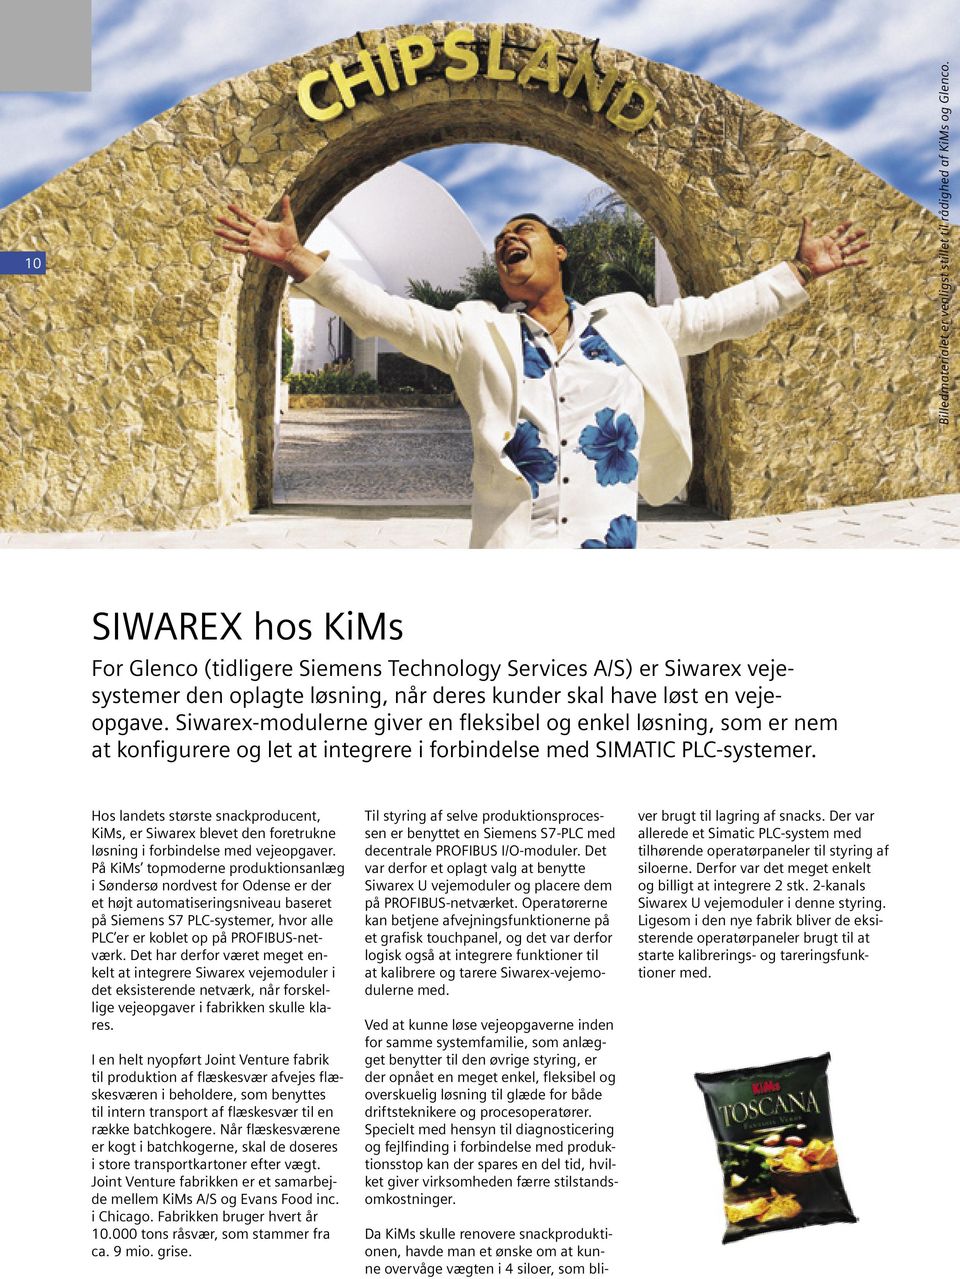 Siwarex-modulerne giver en fleksibel og enkel løsning, som er nem at konfigurere og let at integrere i forbindelse med SIMATIC PLC-systemer.